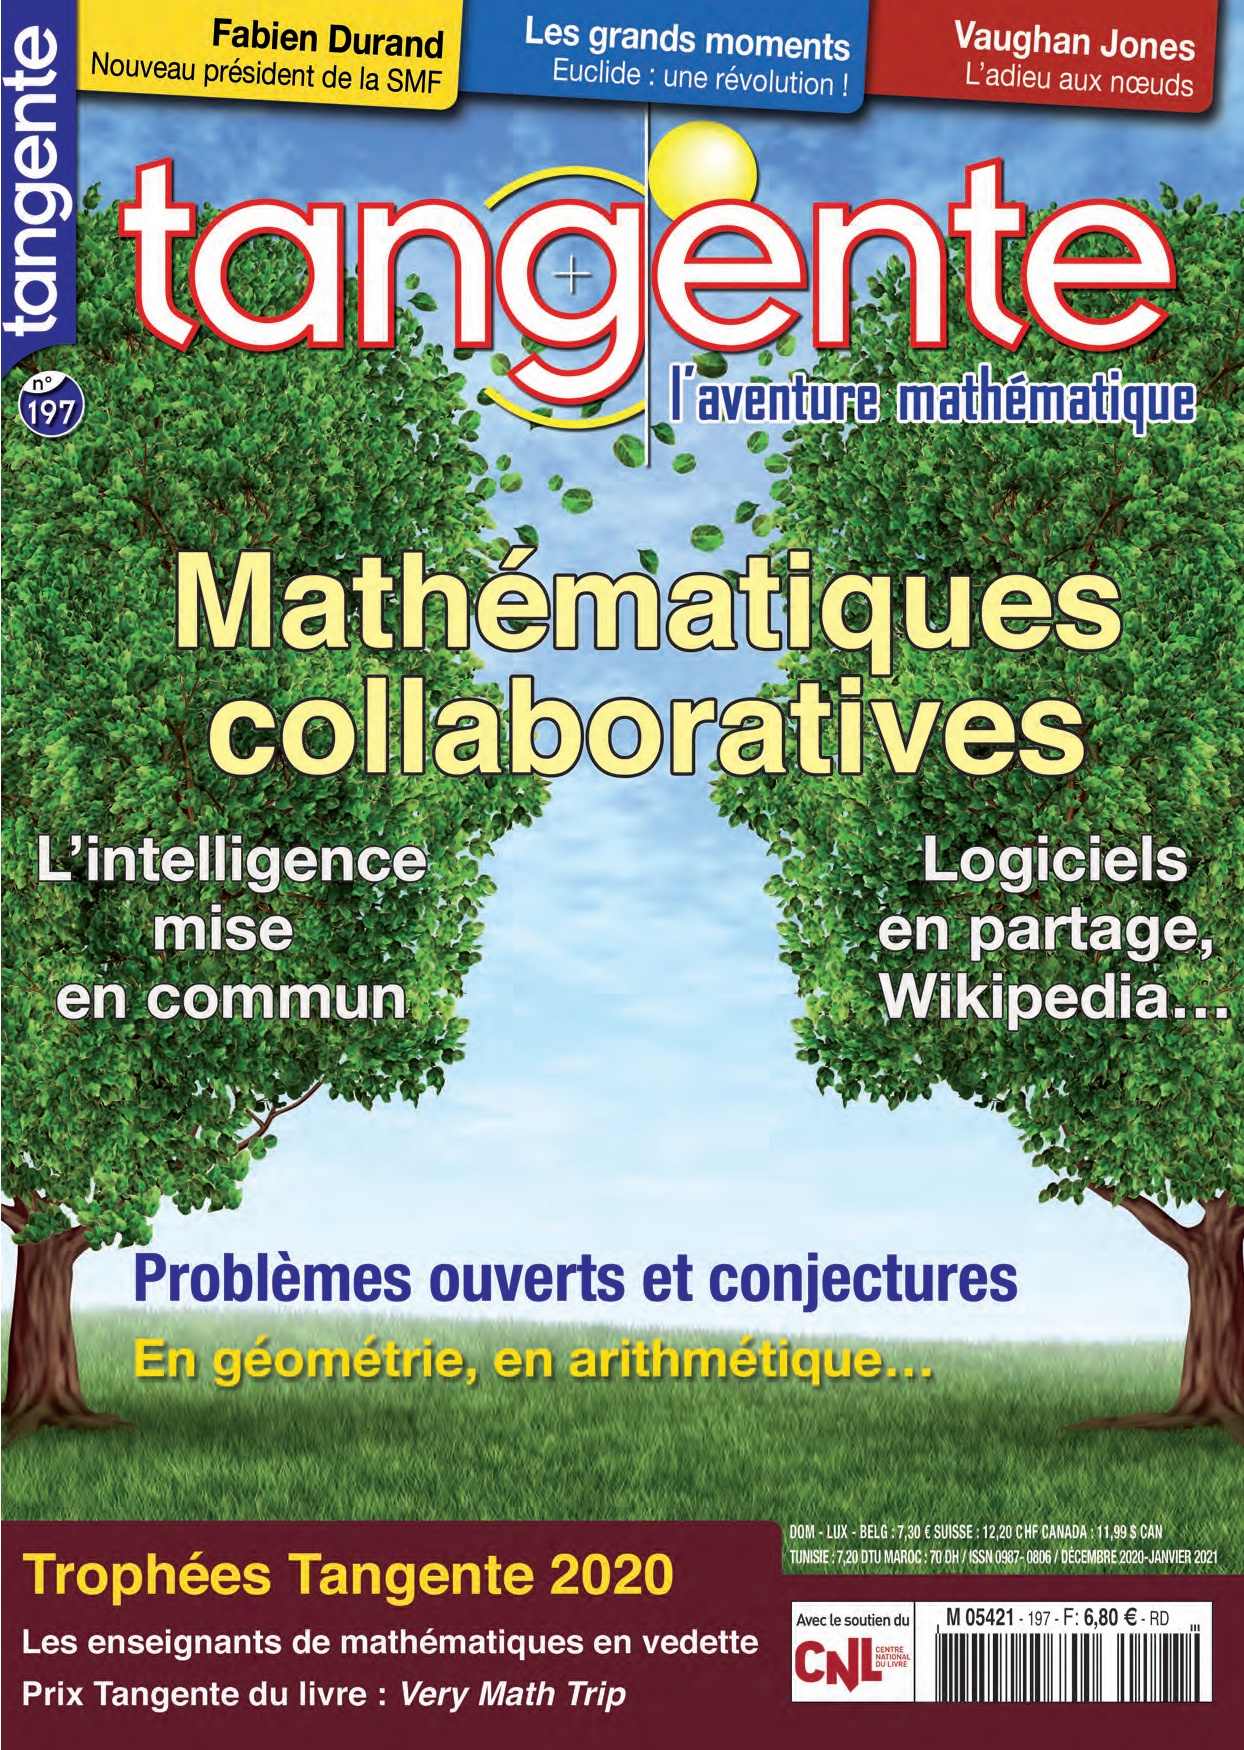 image Tangente n°197 - Mathématiques collaboratives